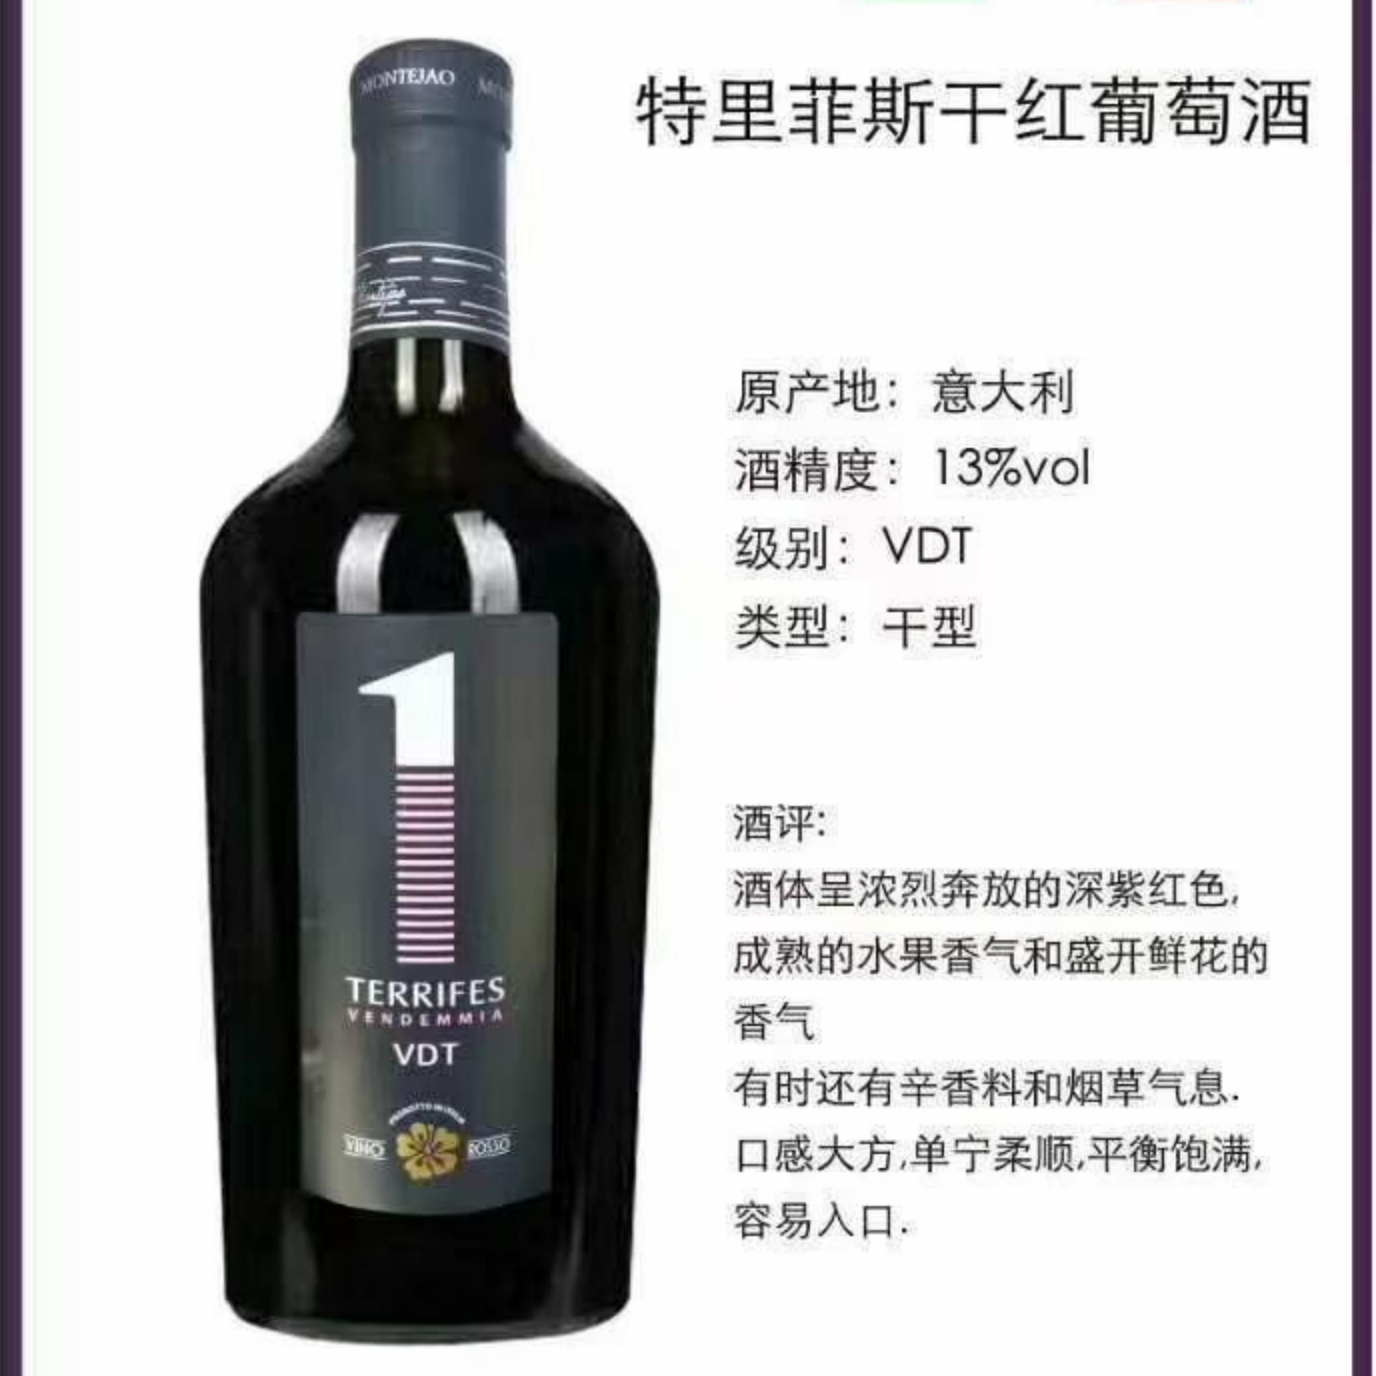 上海万耀意大利进口卡帕尼亚产区小胖瓶系列特里菲斯干红葡萄酒红酒VDT级别进口红酒货源